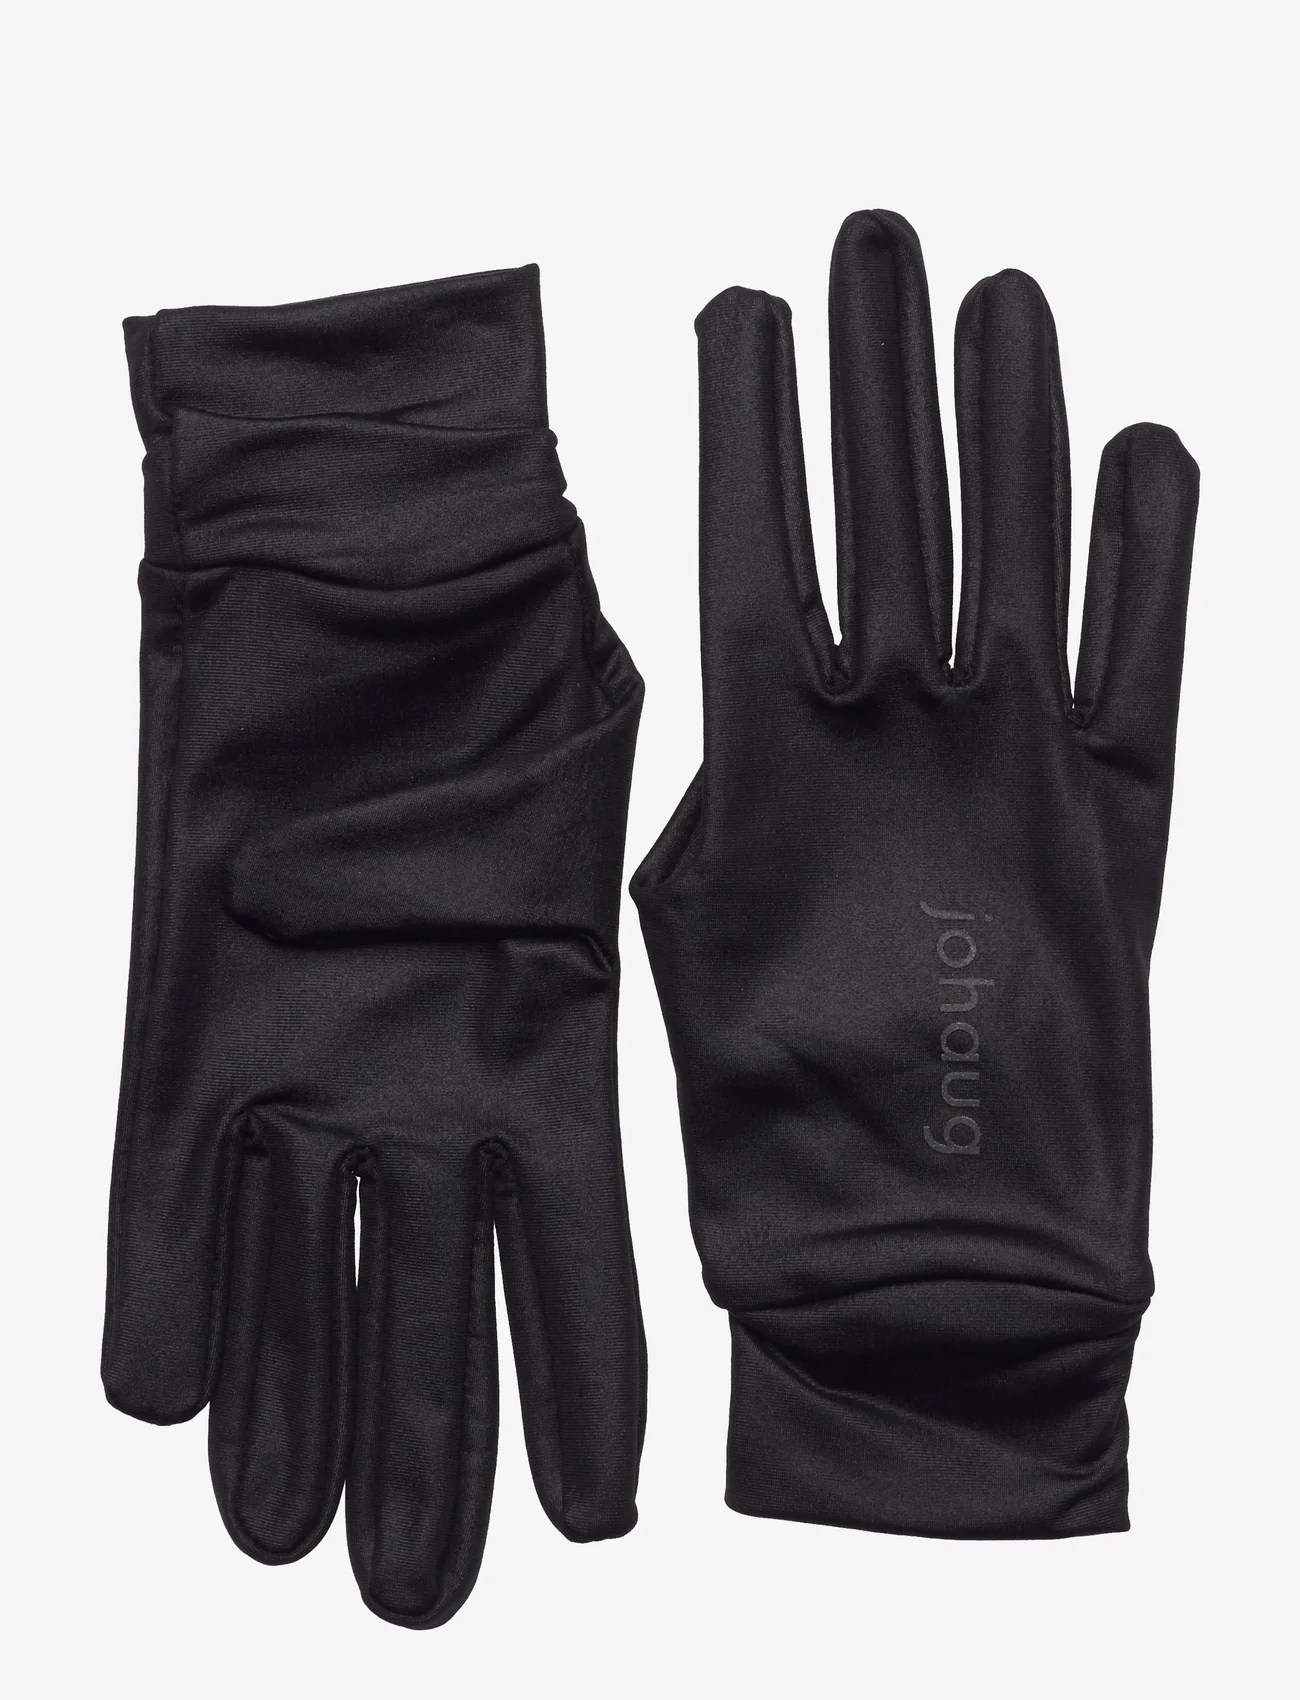 Johaug - Advance Running Glove - lowest prices - black - 0